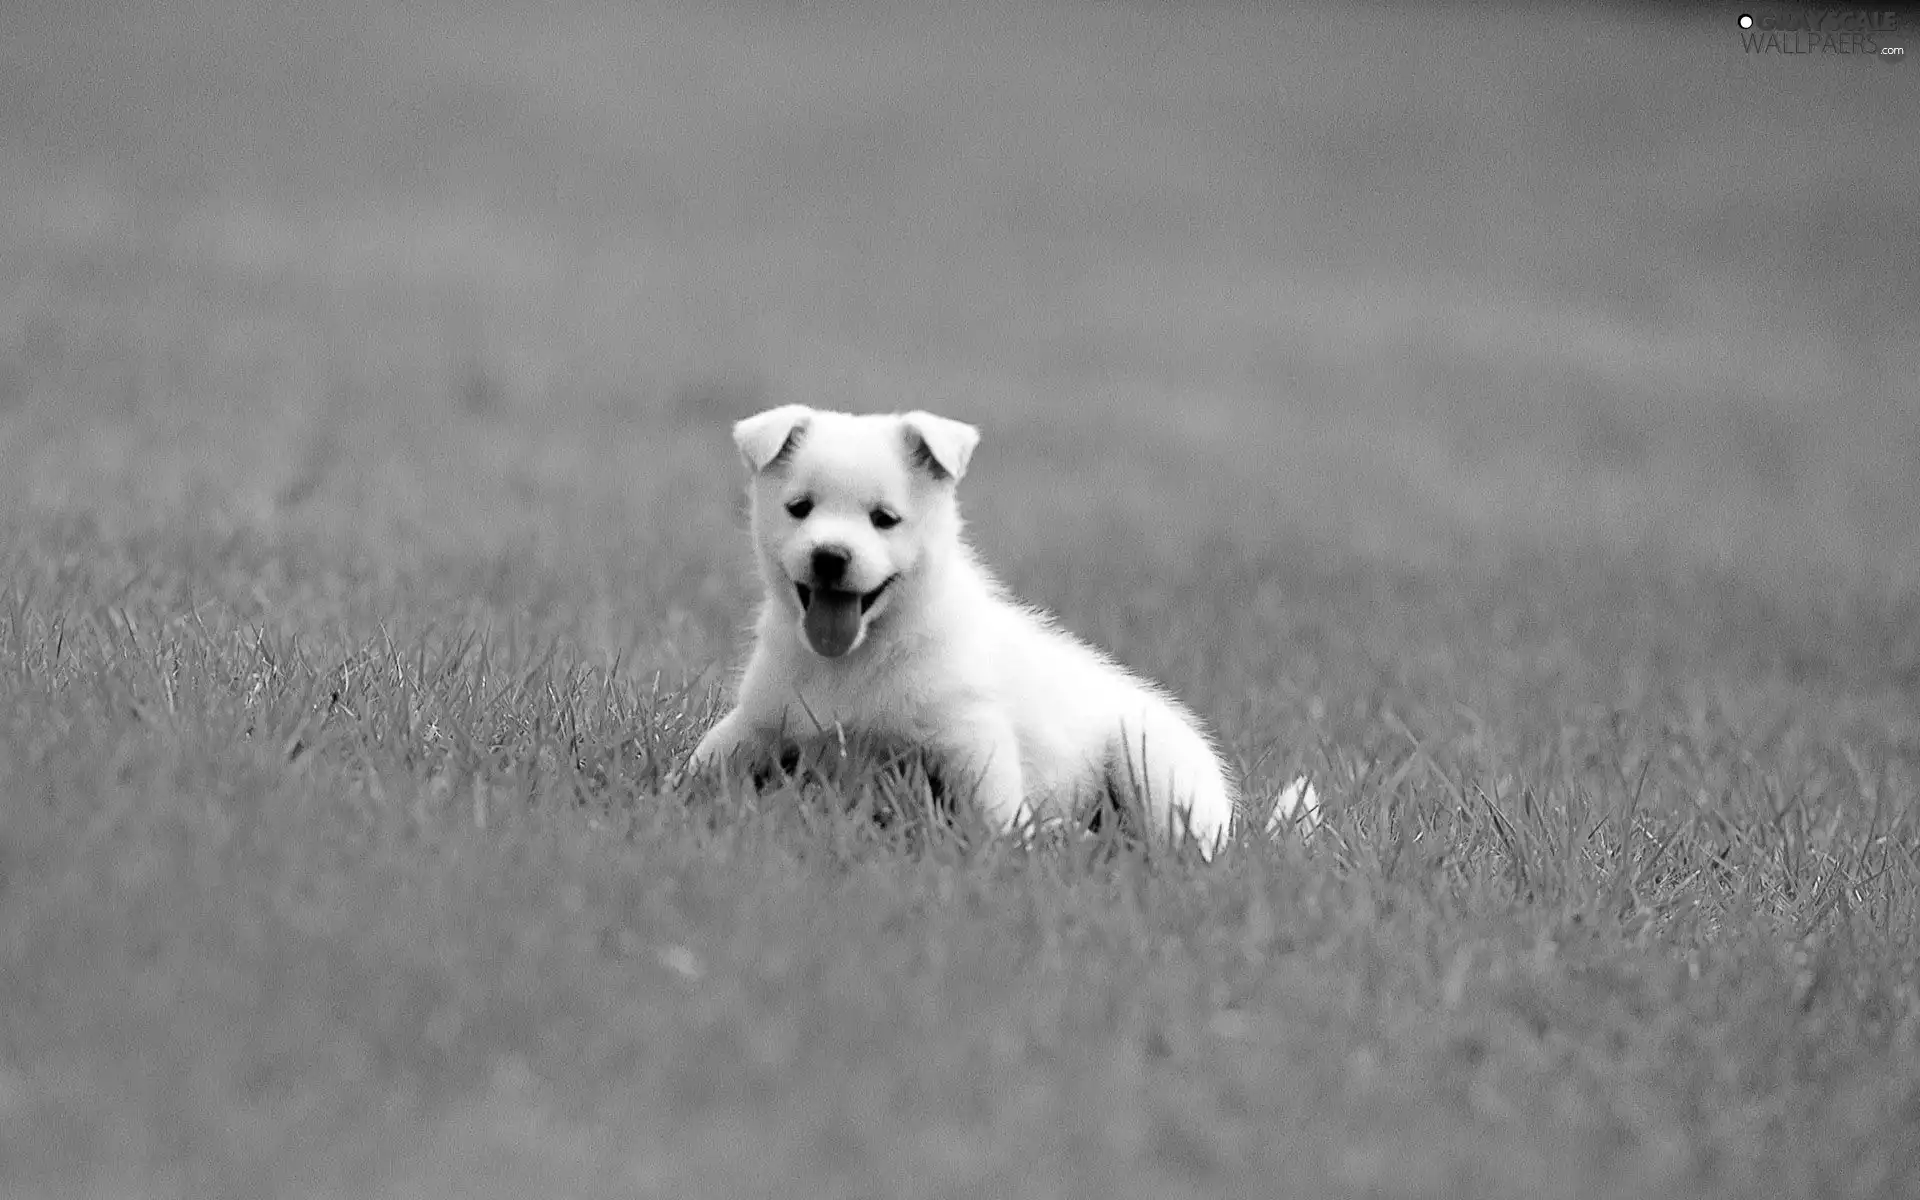 grass, White, Puppy